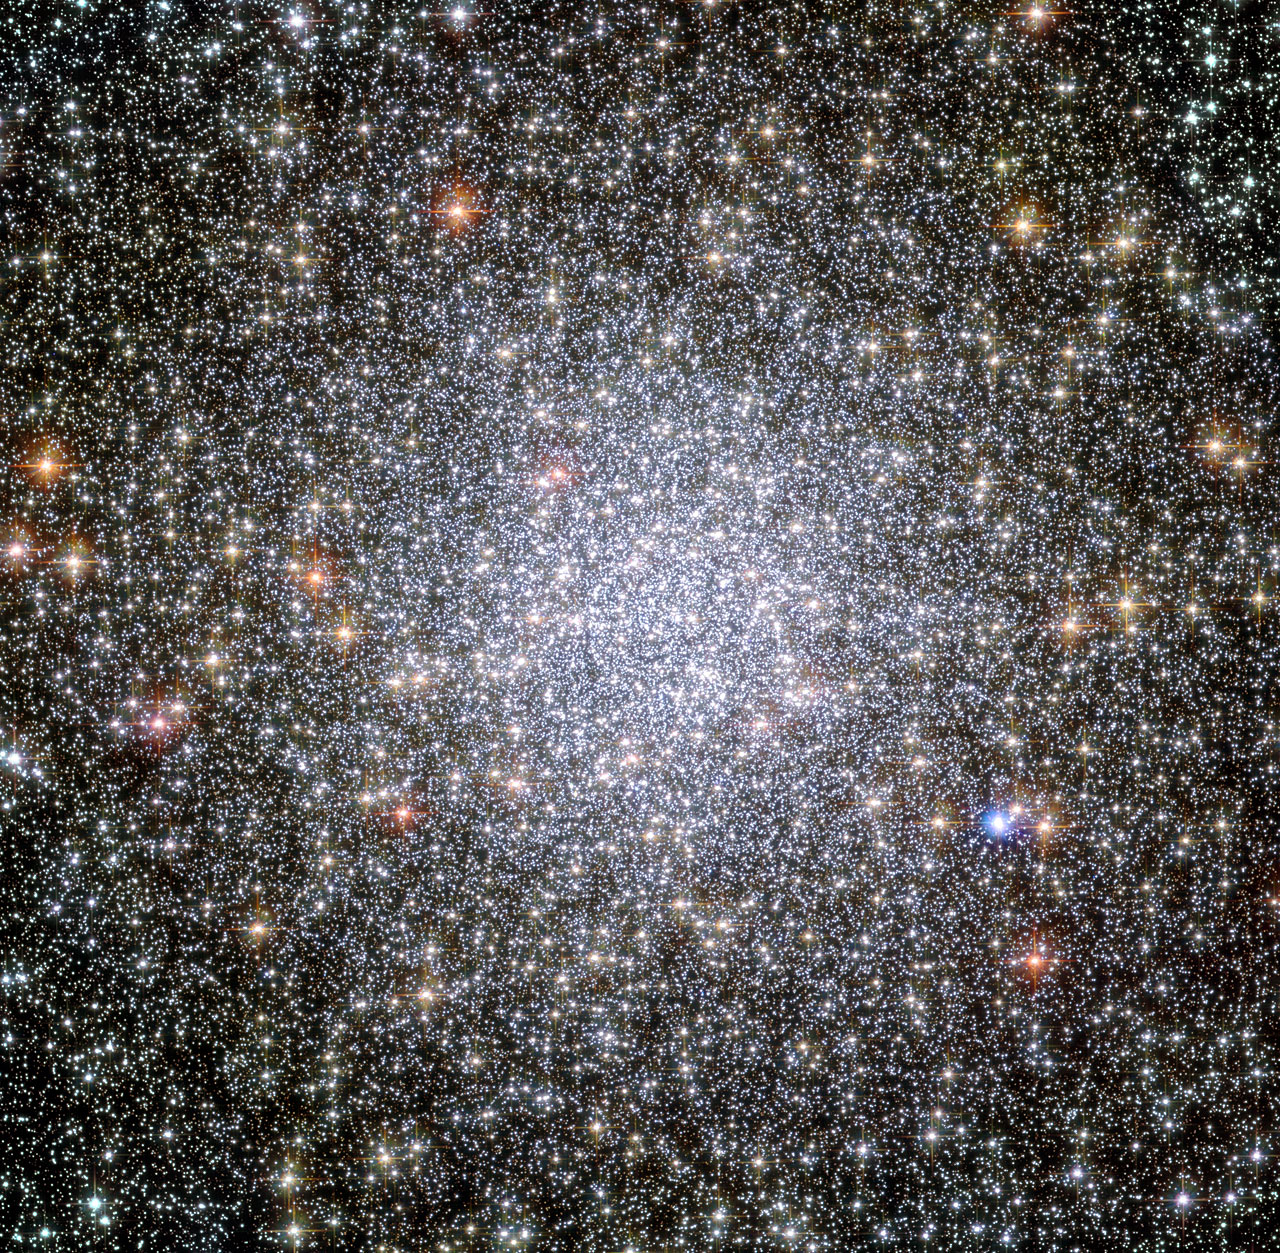 Vo hviezdokope 47 Tuc nájdená prvá čierna diera strednej hmotnosti